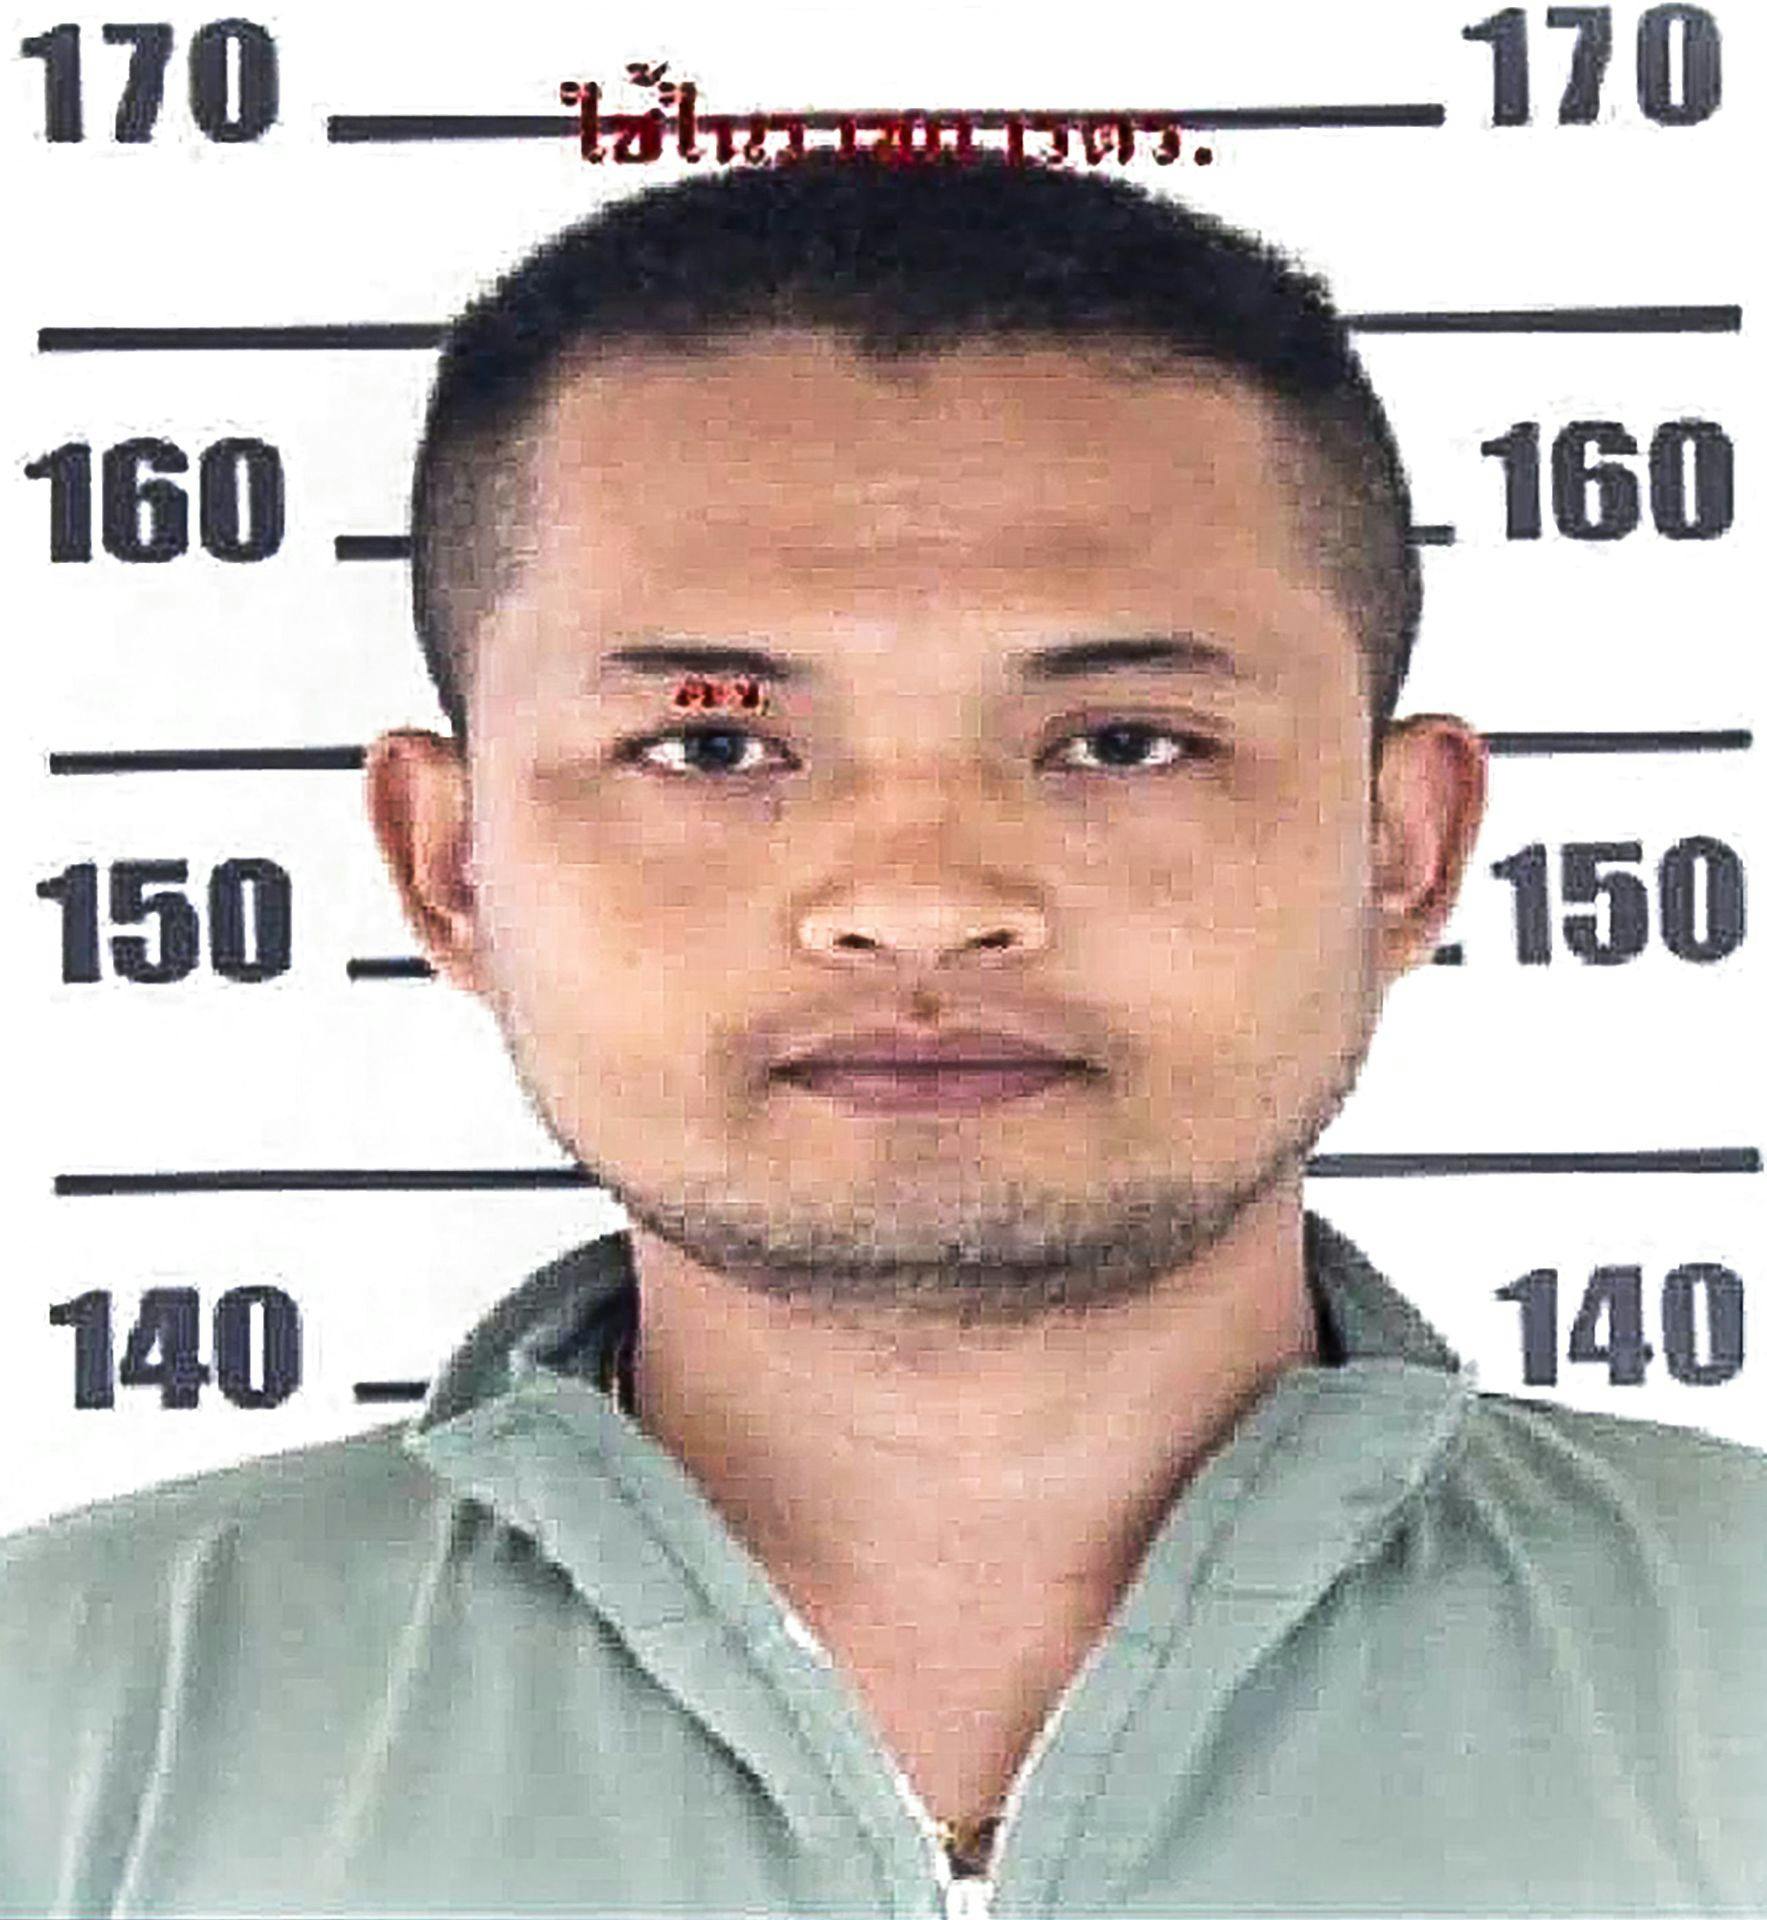 Den tidligere politibetjent Panya Khamrab er blevet identificeret som gerningsmanden til det forfærdelige masserskyder i Thailand, hvor mindst 34 blev dræbt - heraf 22 børn.
